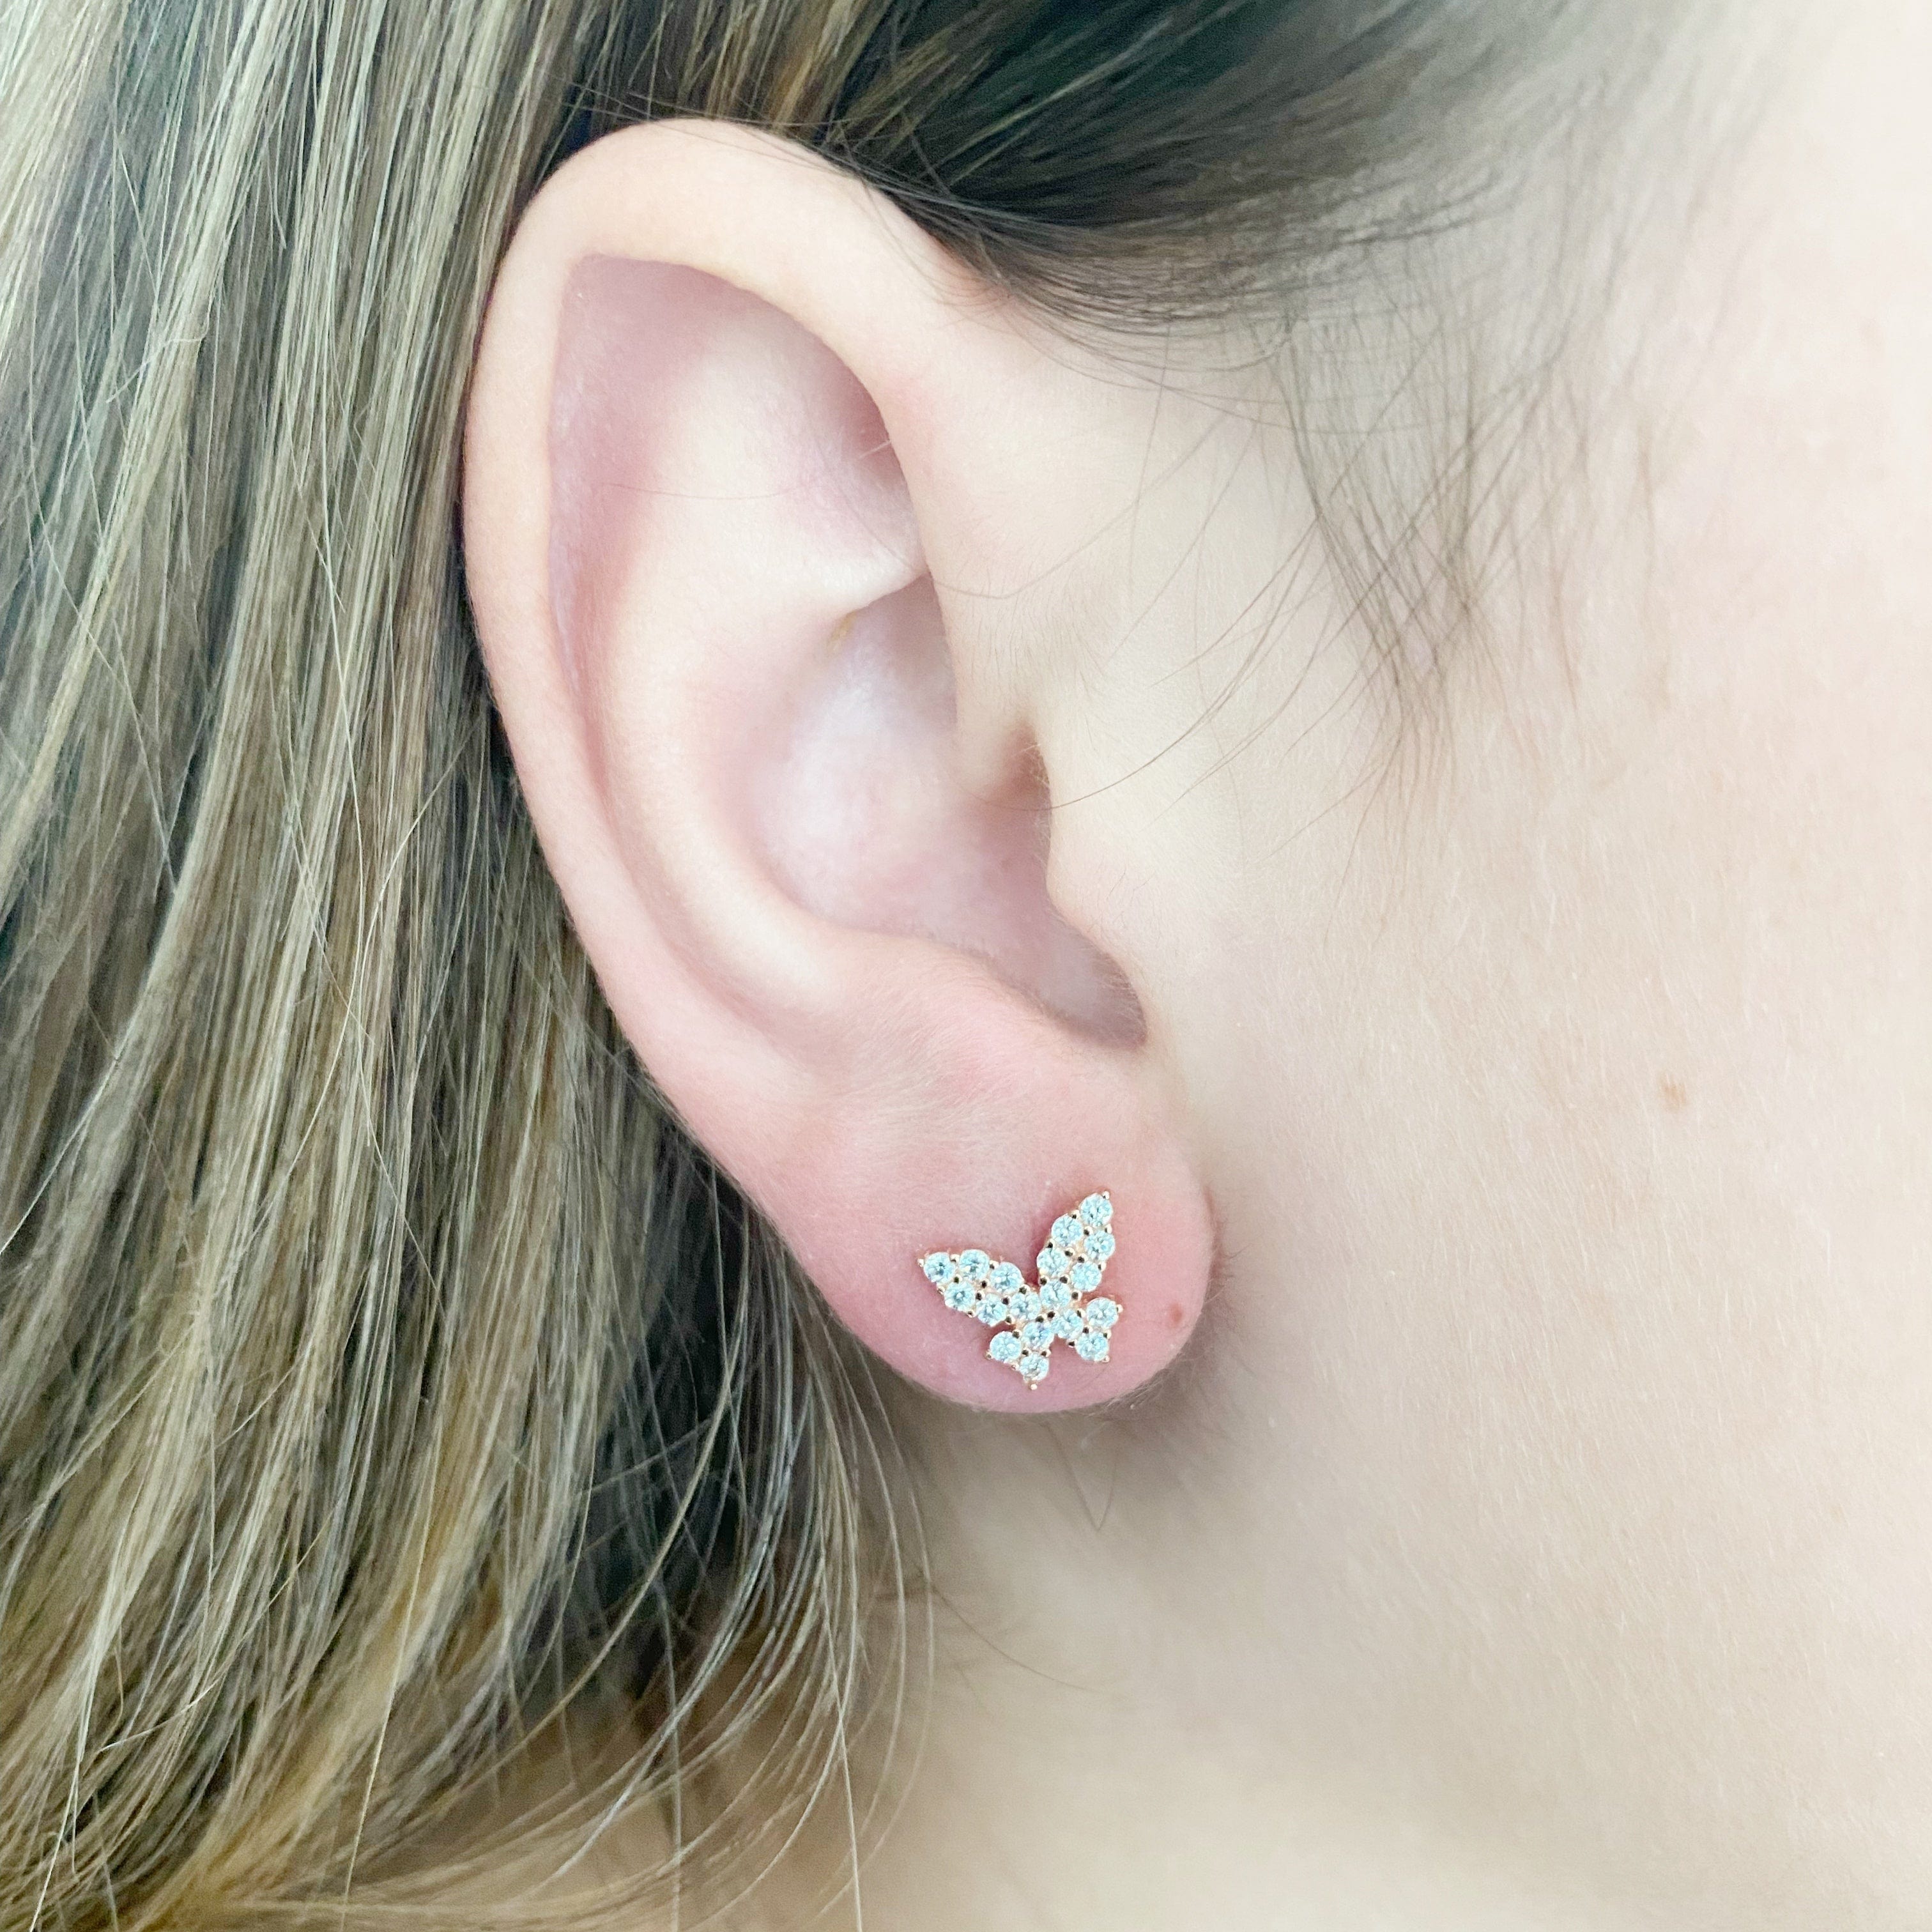 Dainty Silver Butterfly Stud Earrings - NotionIsland Jewelry